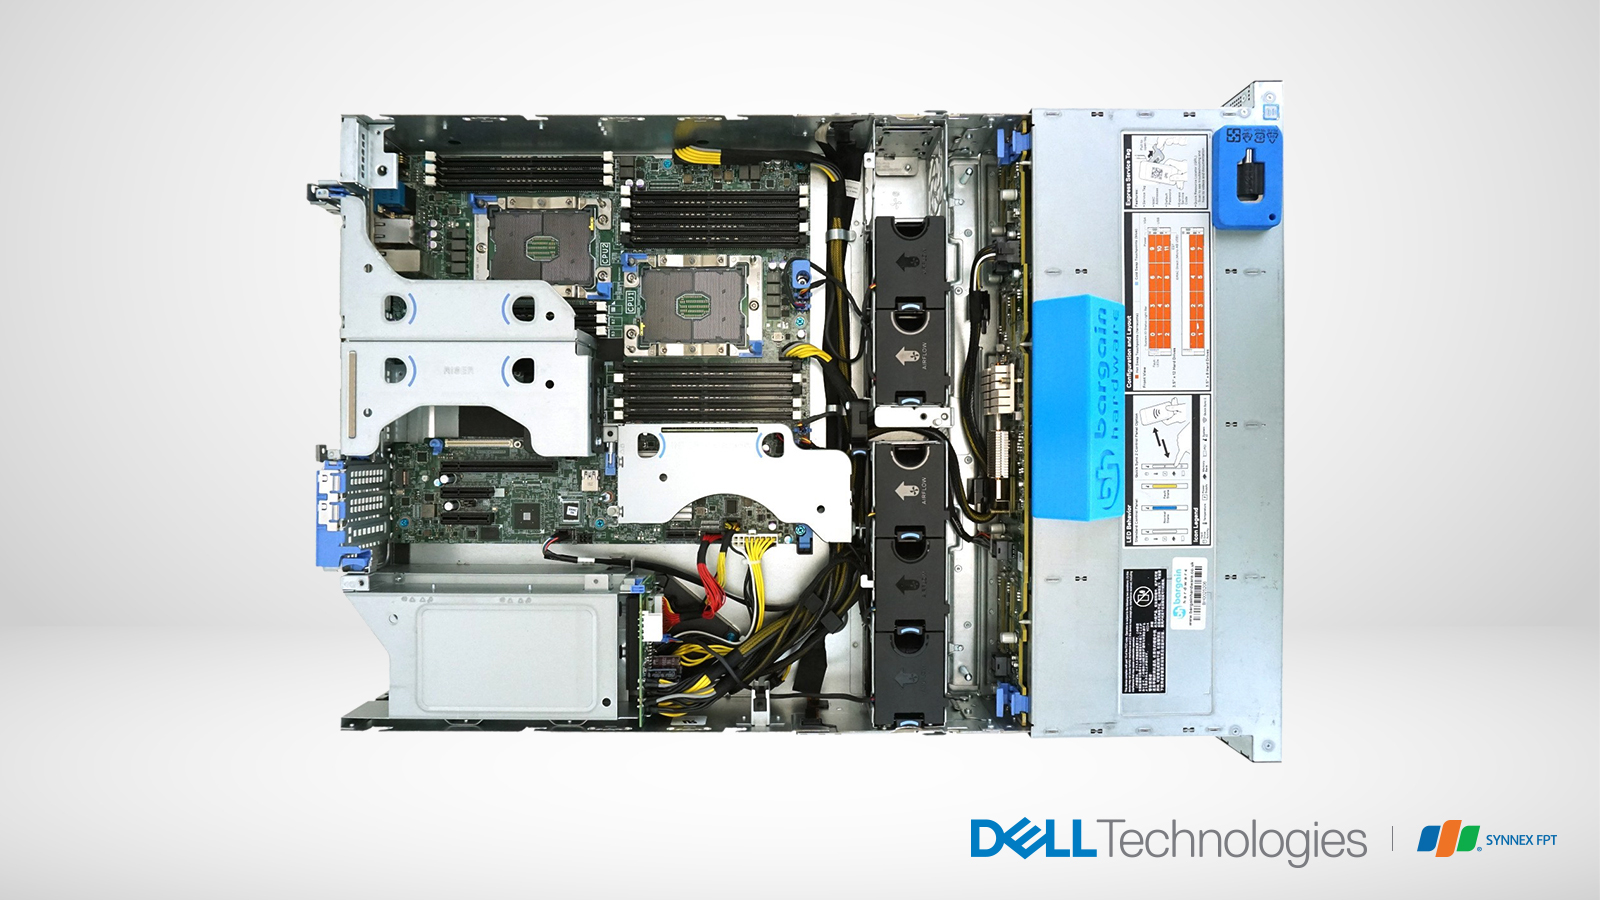 Dell EMC PowerEdge R540 - “cánh tay phải” cho doanh nghiệp đang phát triển 